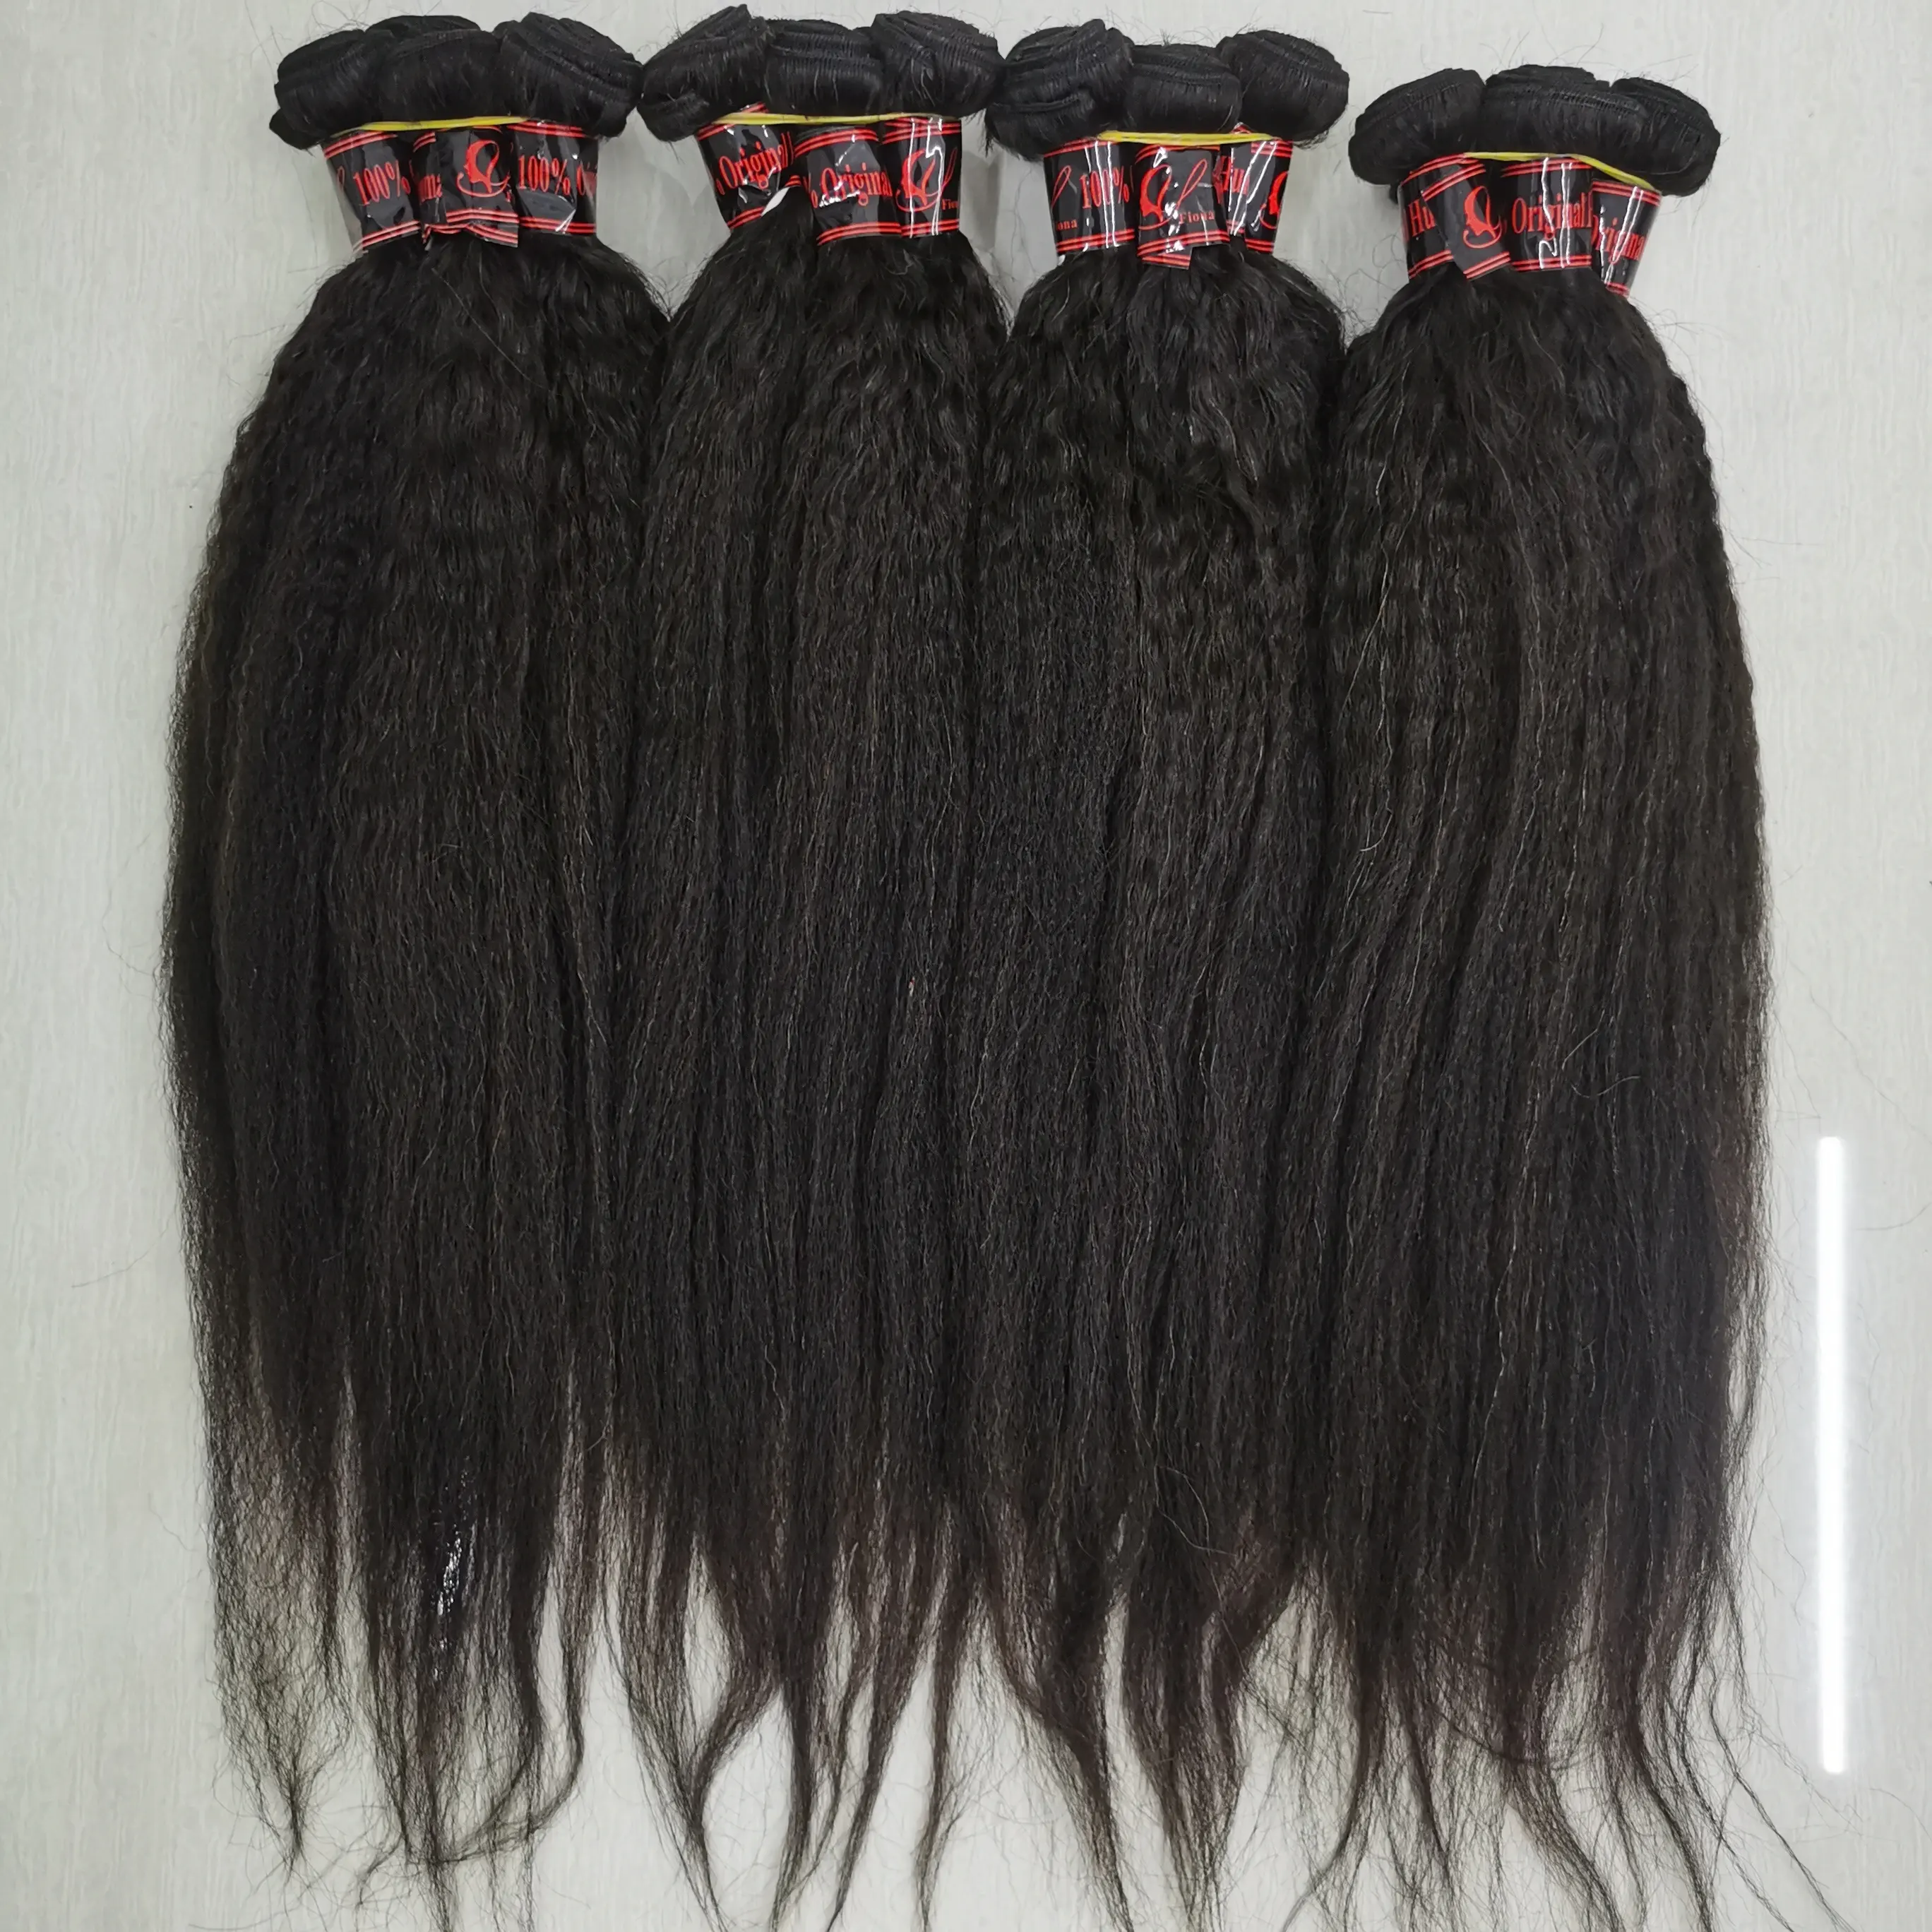 Letsfly-mechones de cabello humano Remy largo, barato, 40g/Ud., compra a granel, 20 Uds., venta al por mayor de fábrica, envío gratis